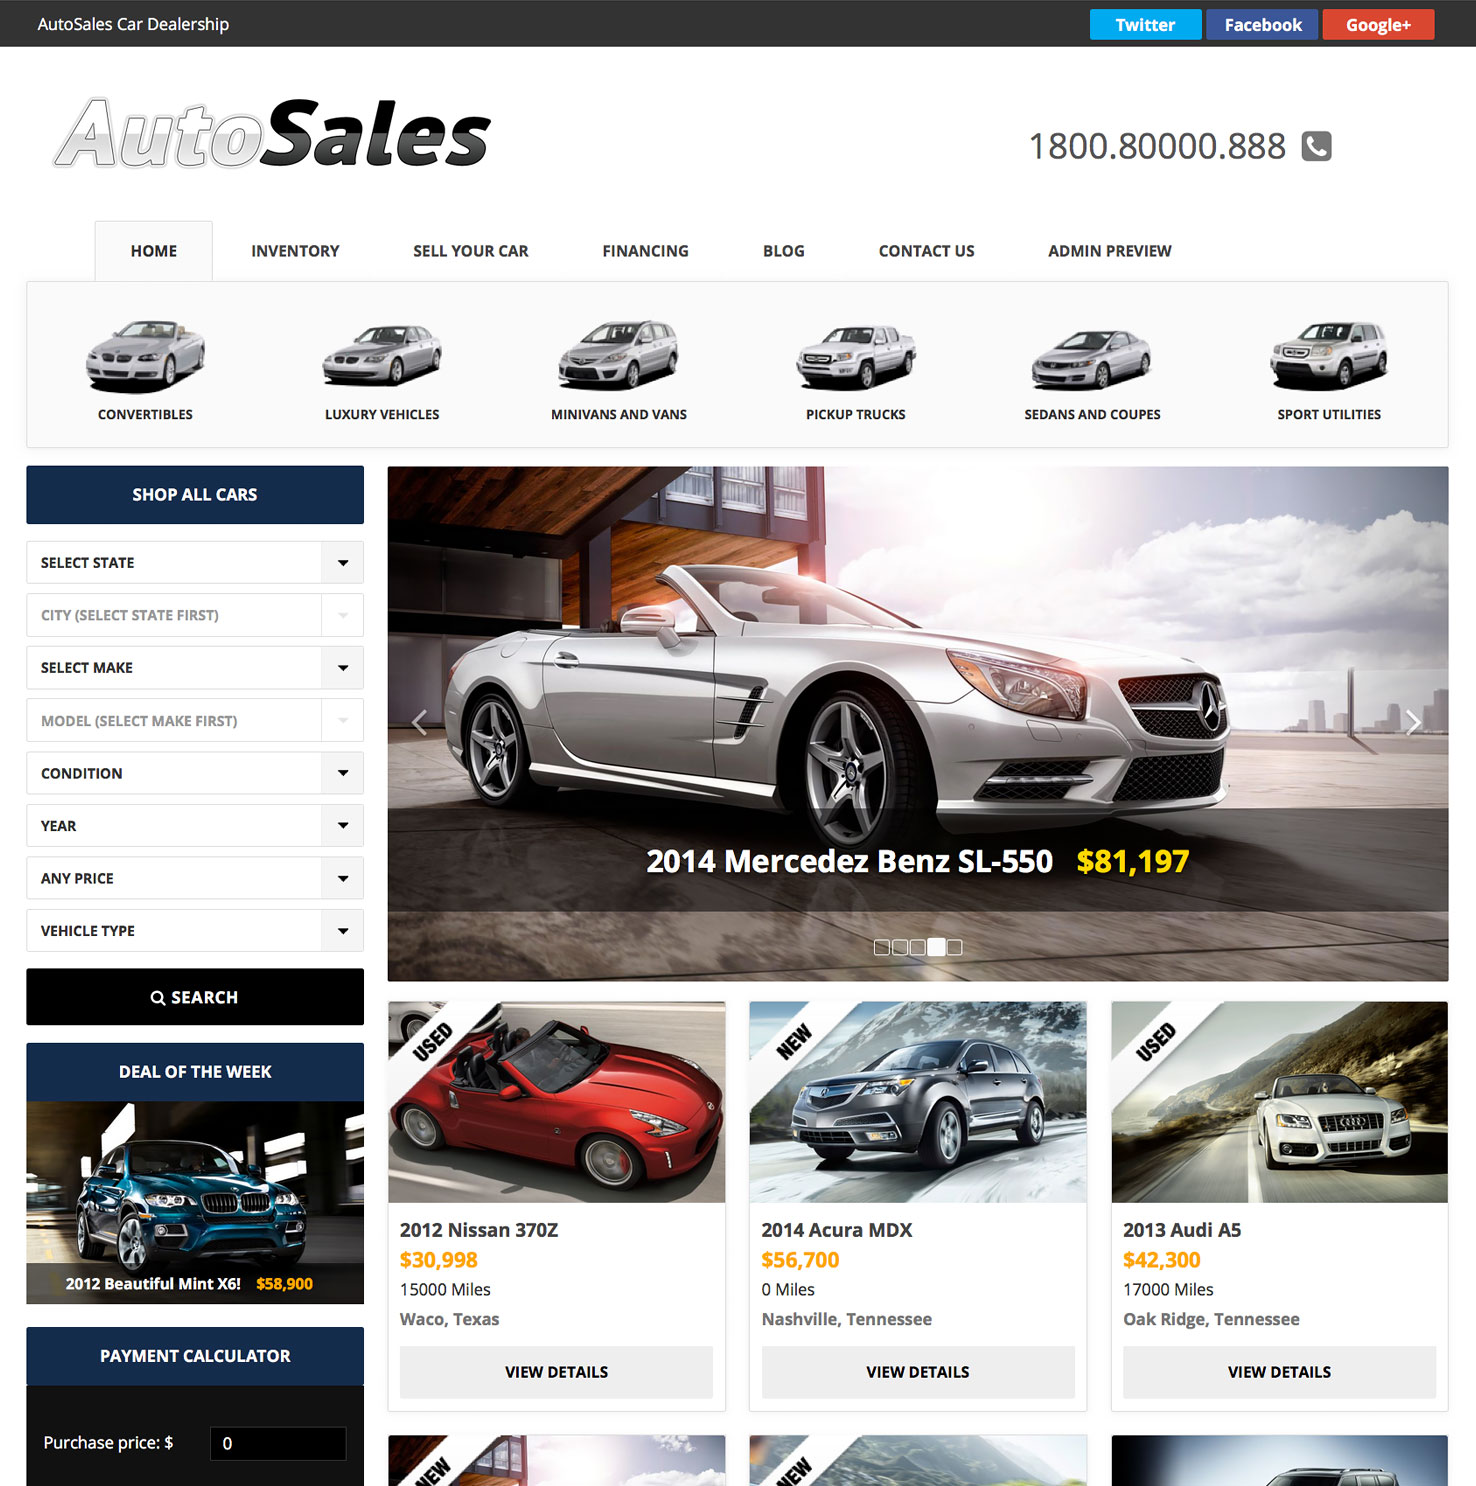 WordPress Auto Sales Theme